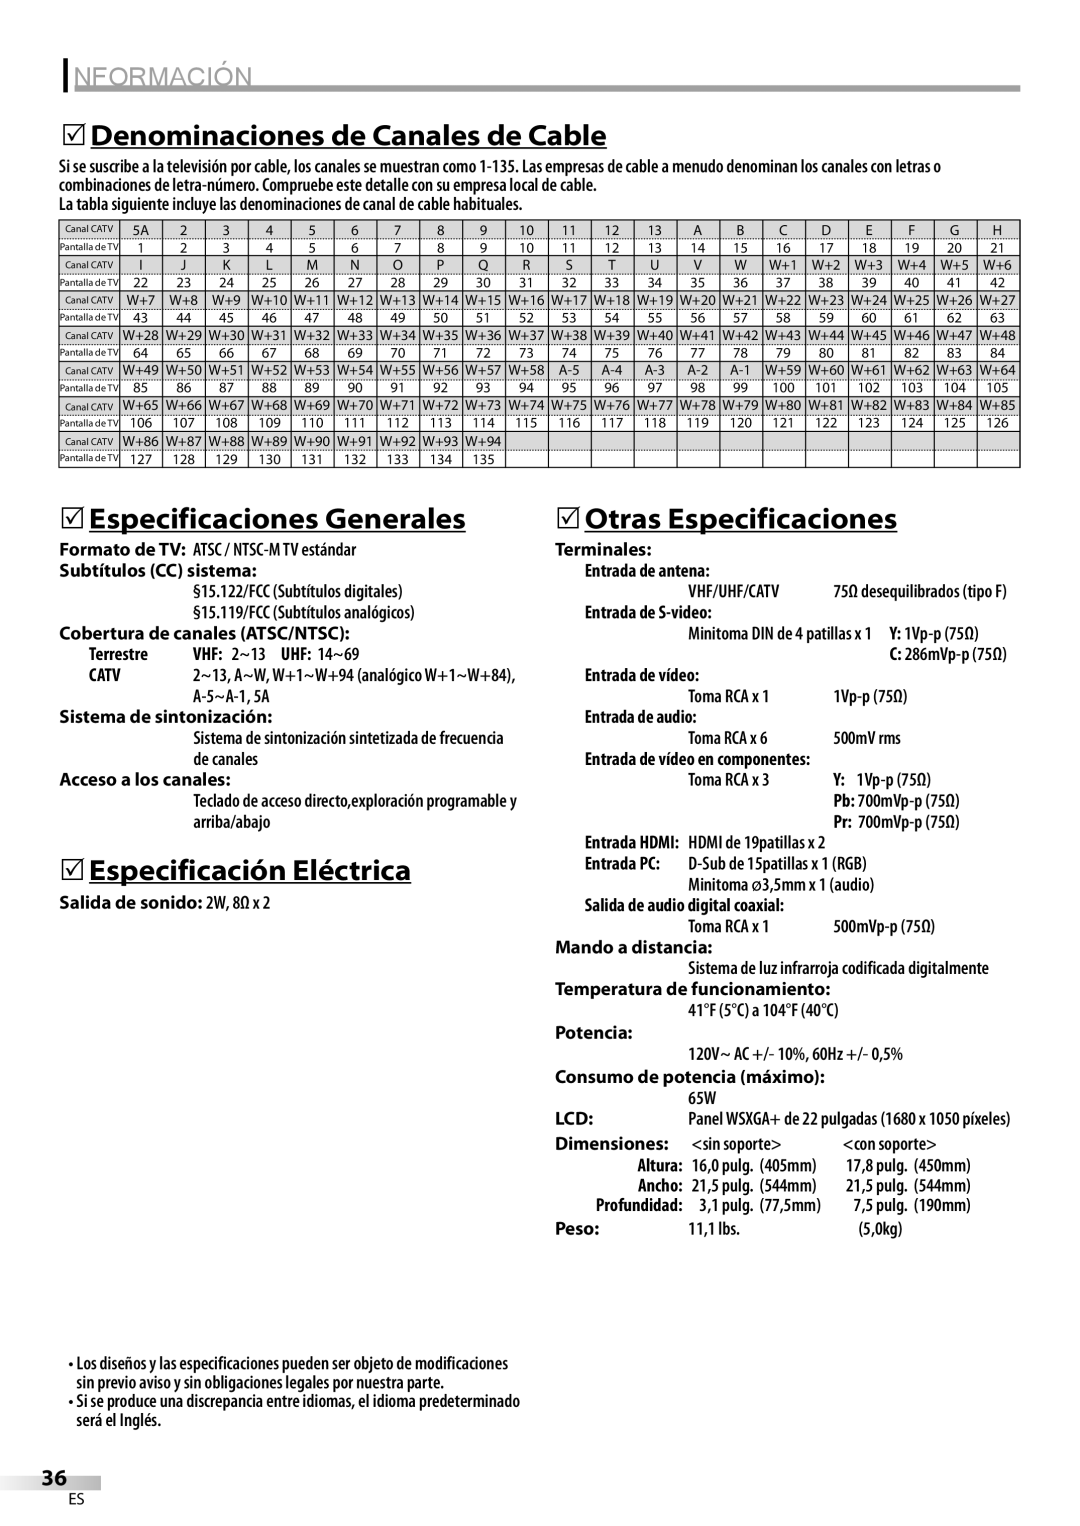 Sylvania LC225SC9 5Denominaciones de Canales de Cable, 5Especificaciones Generales, 5Especificación Eléctrica, Información 